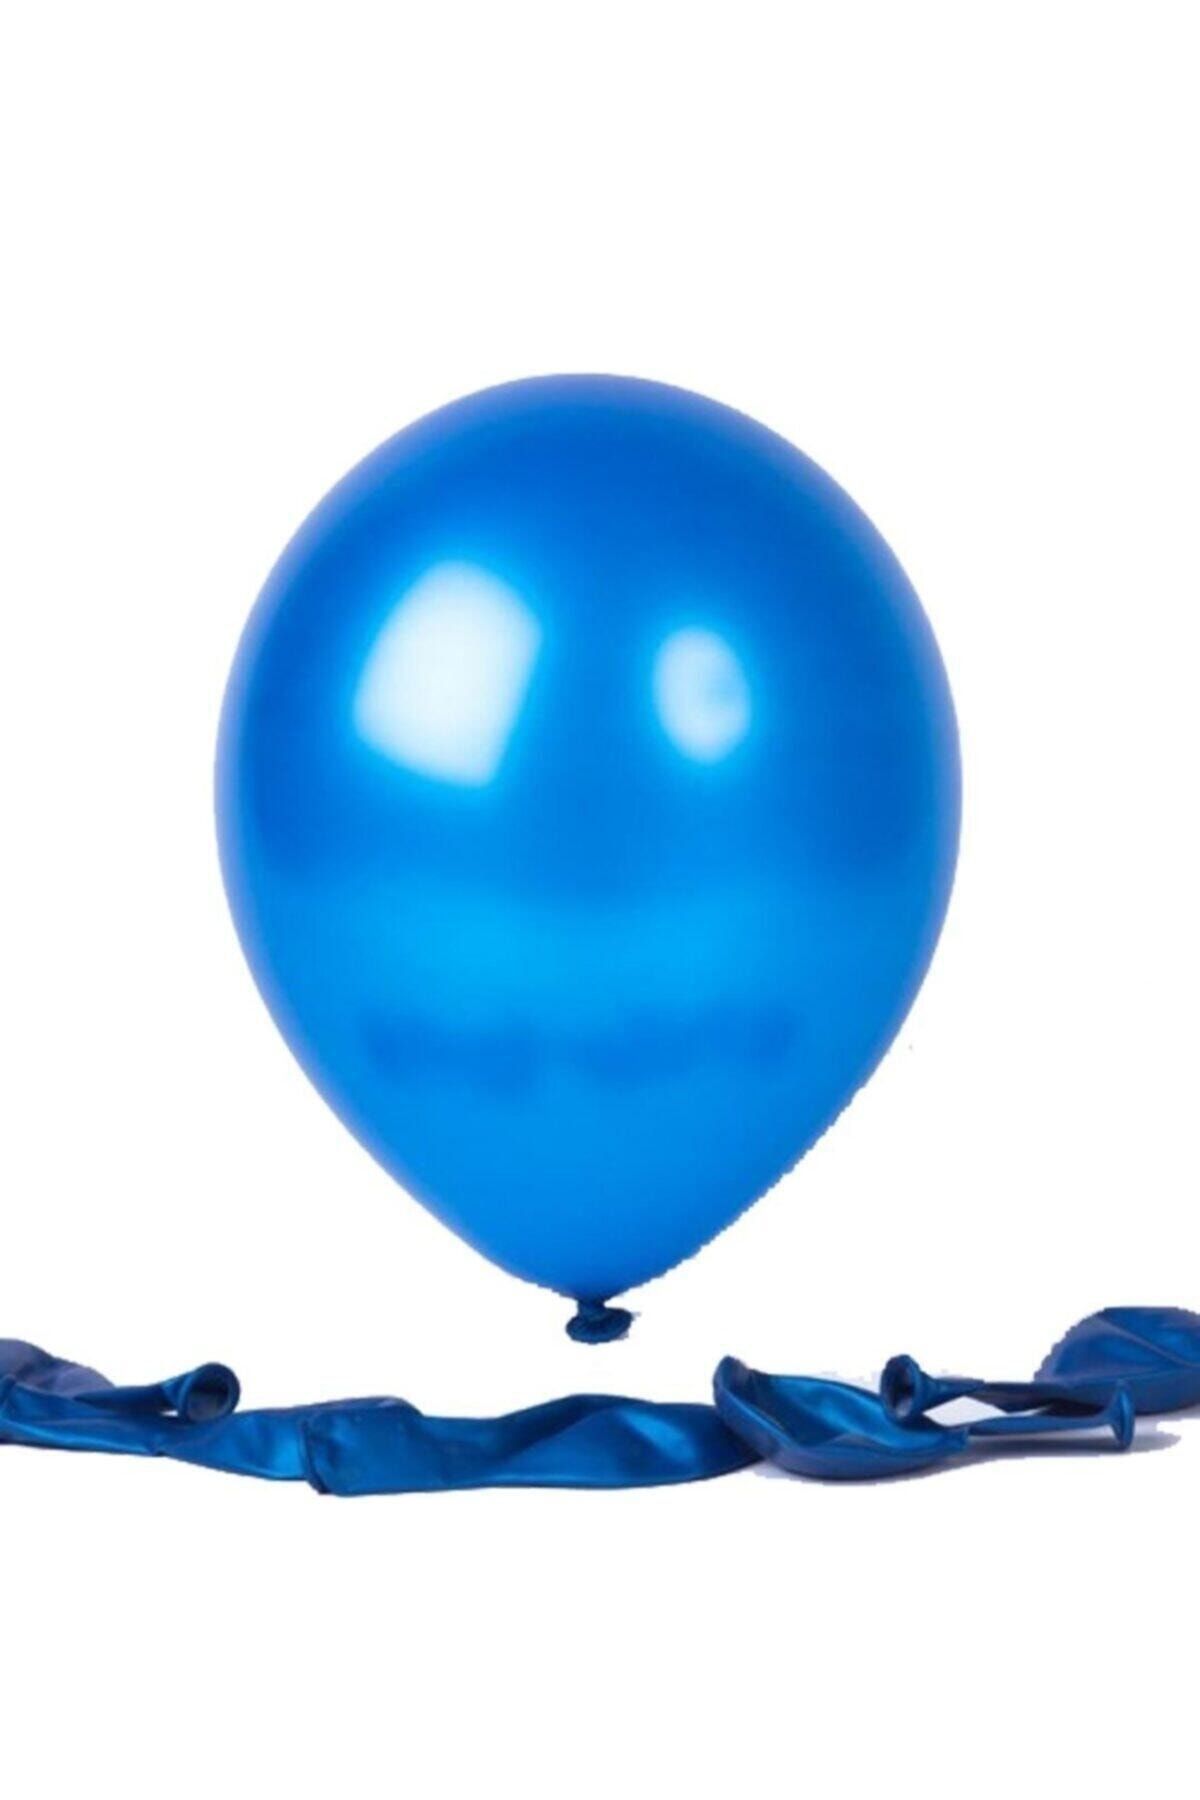 Голубому воздушному шару. Голубой шарик. Воздушный шарик. Шар голубого цвета. Синий воздушный шар.